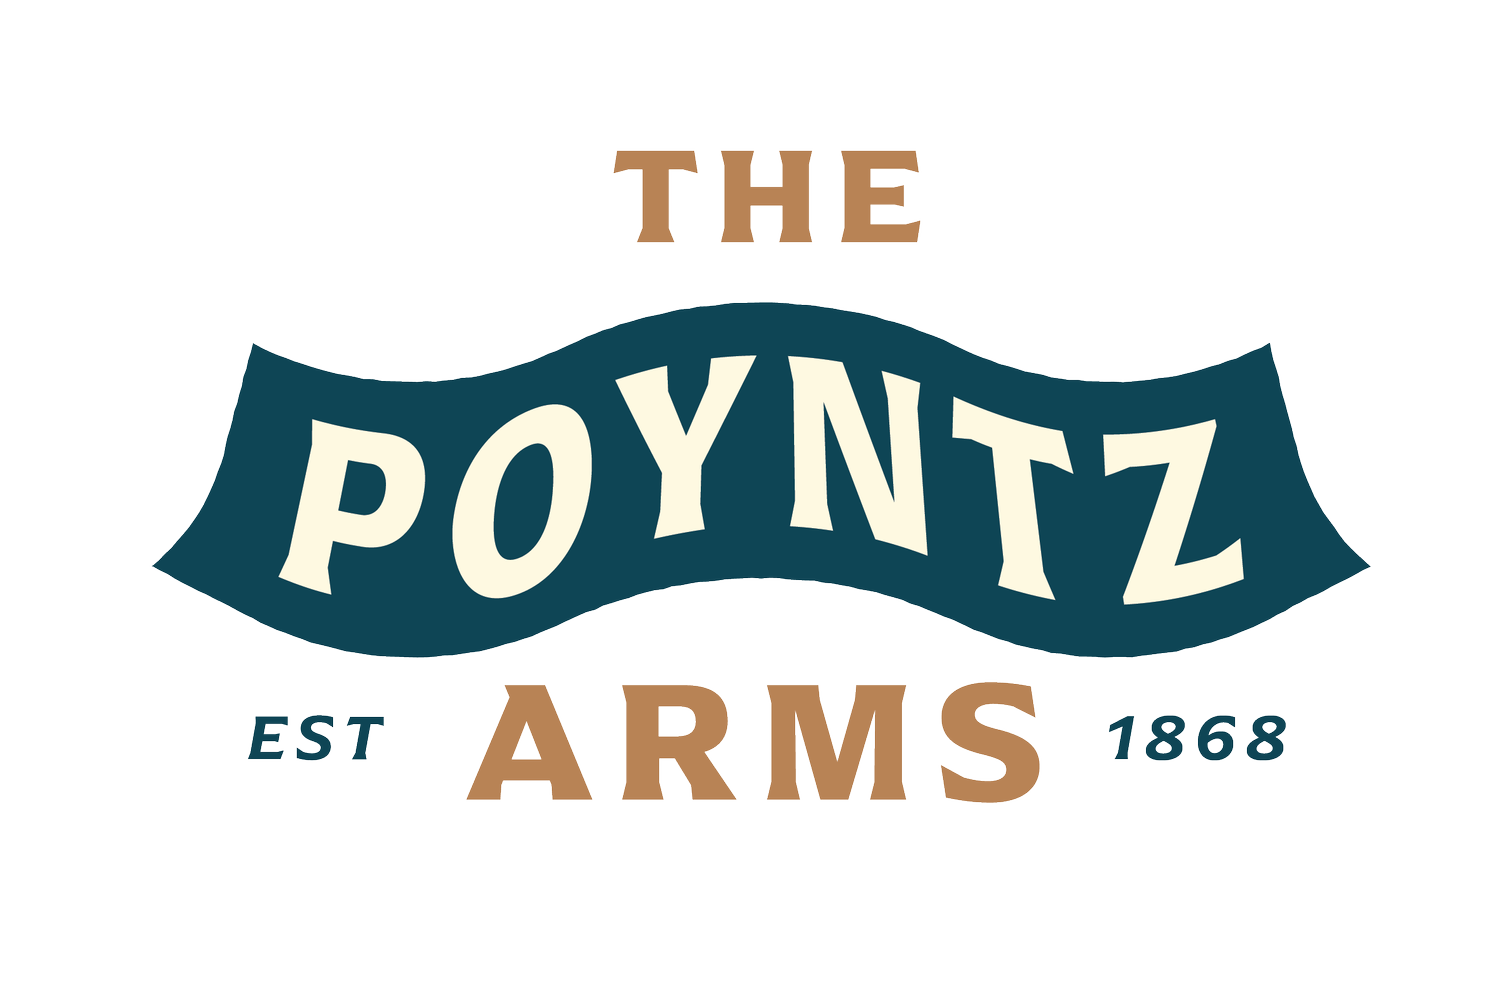 The Poyntz Arms